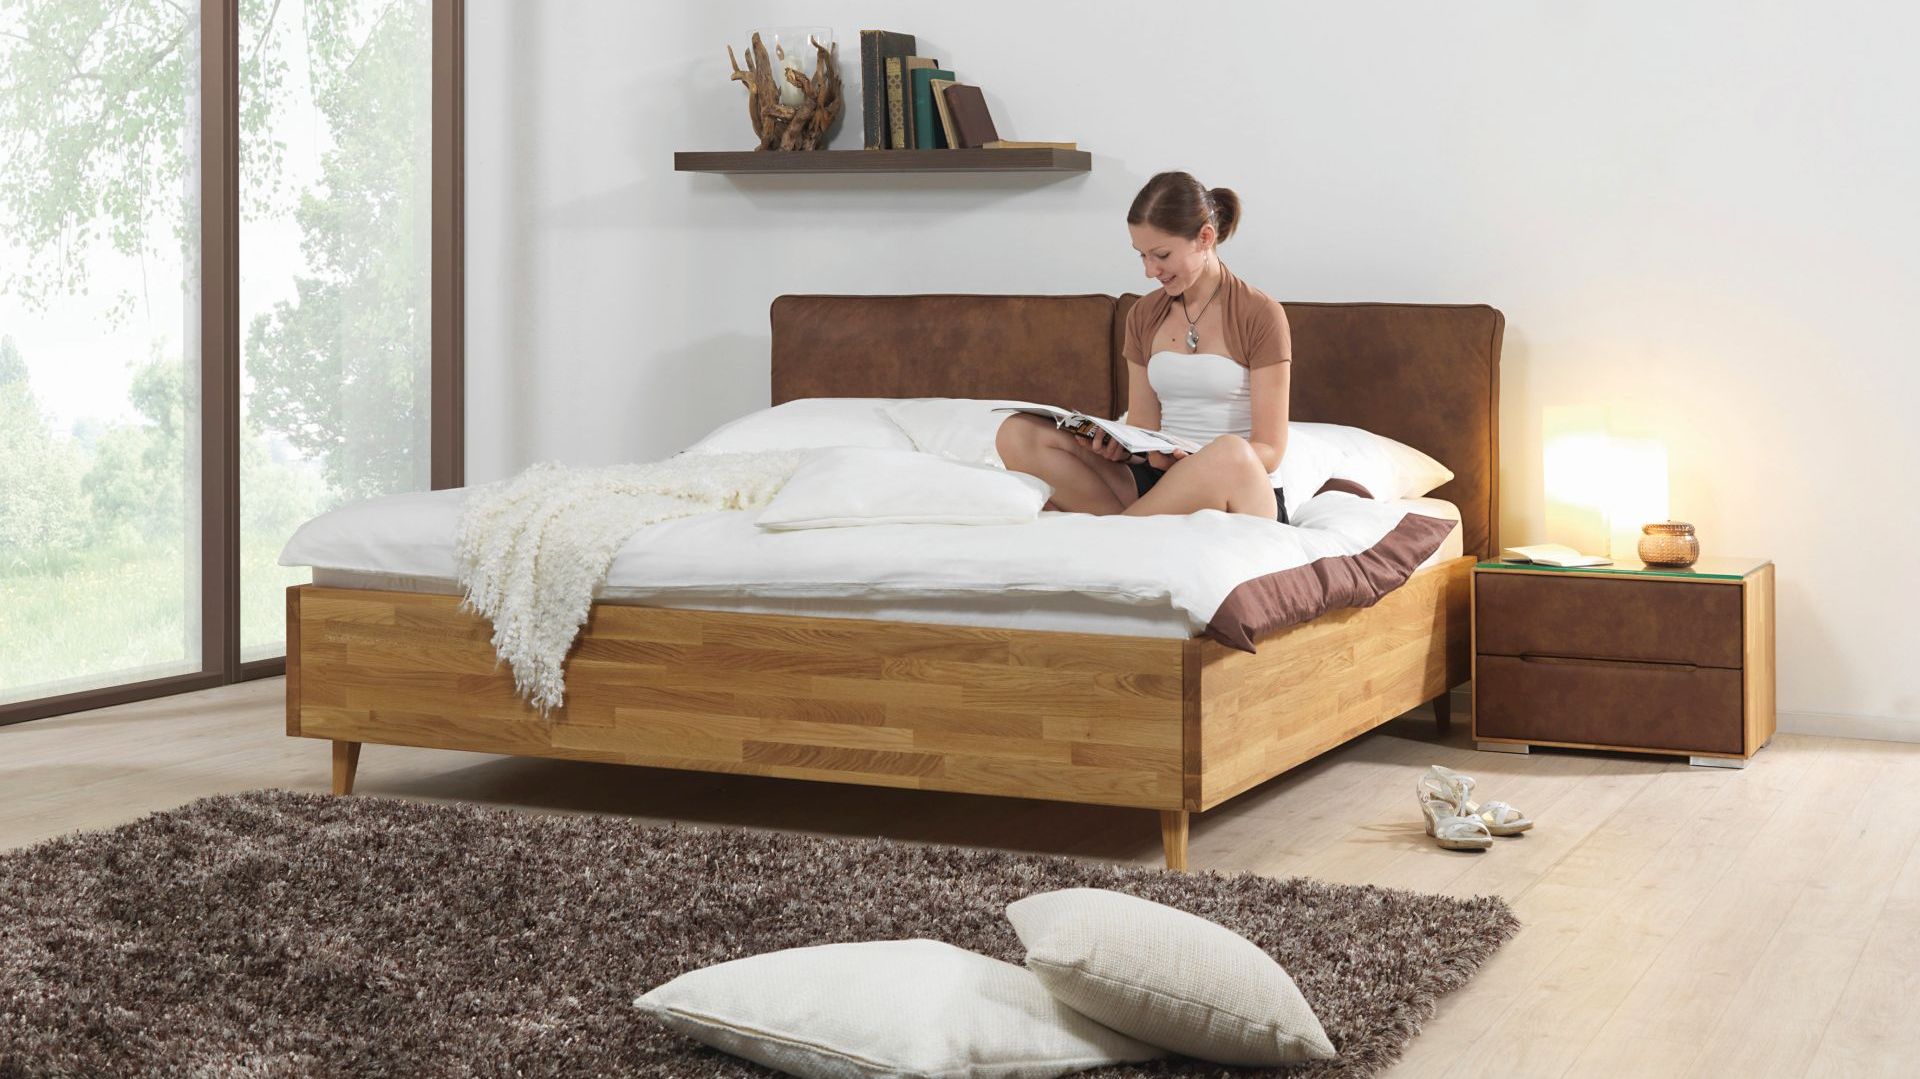 Drewniane łóżko. 10 najpiękniejszych modeli 